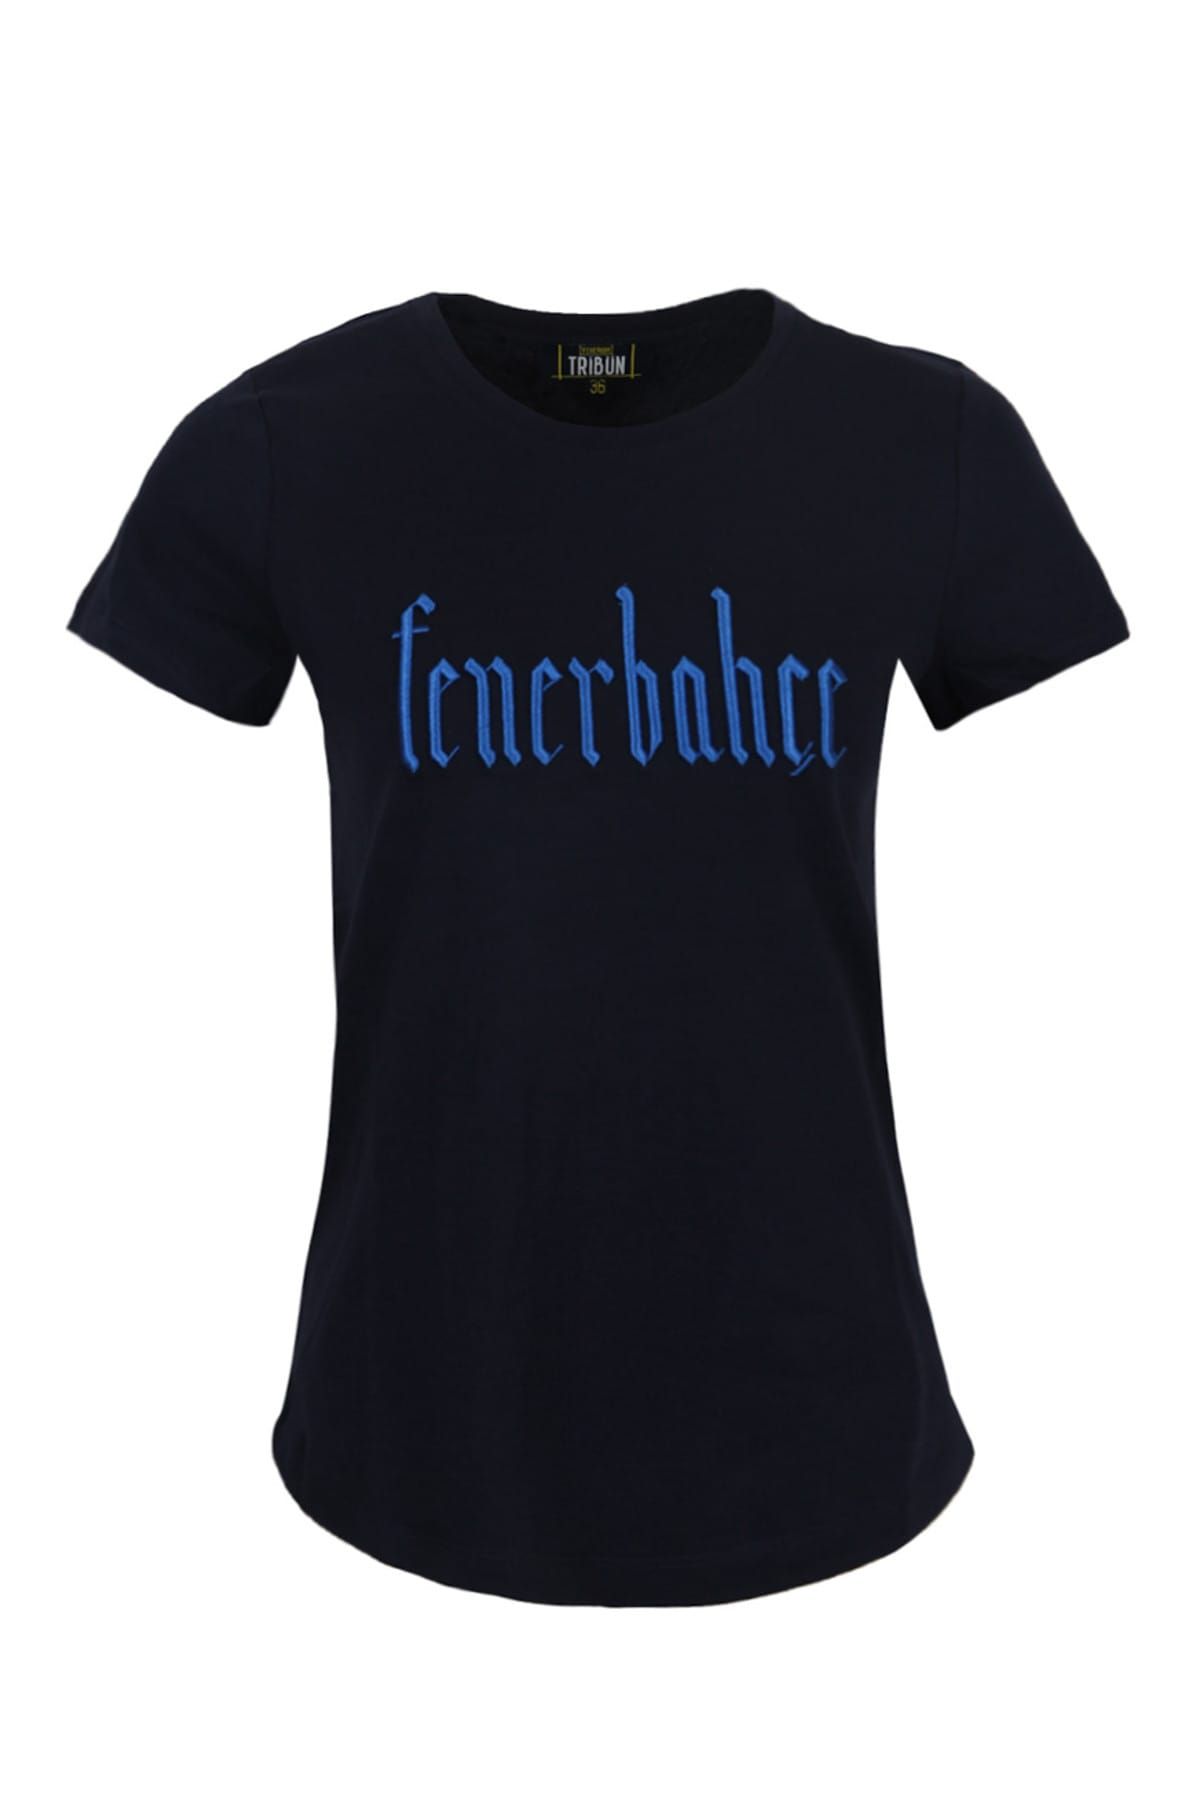 Fenerbahçe Kadın Tribun Simli Nakış T-Shirt